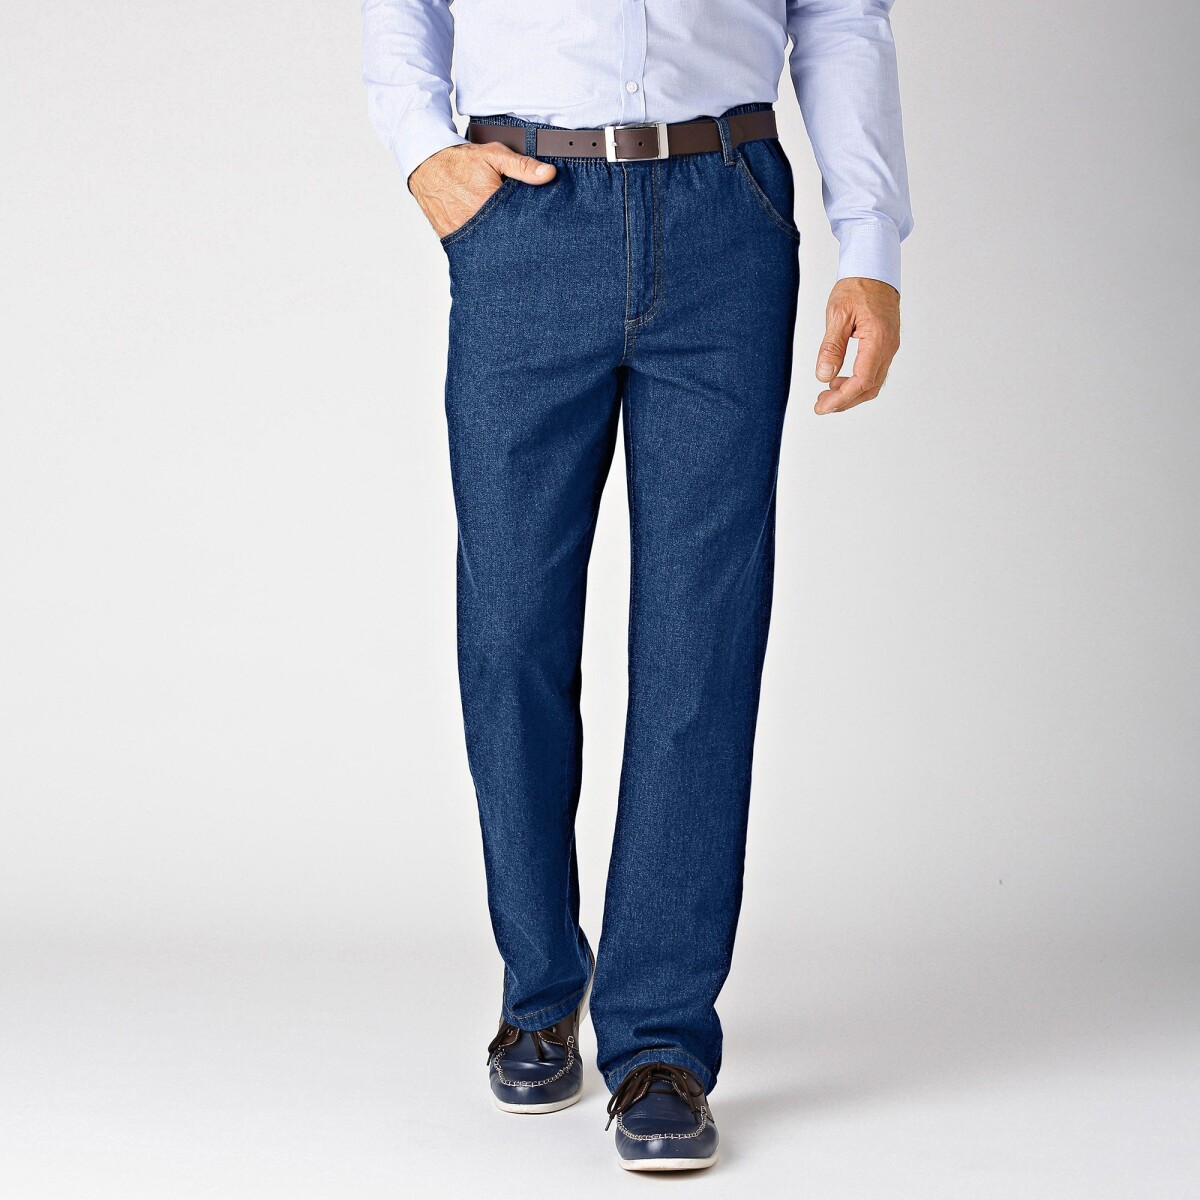 Levně Extra pohodlné džíny s pružným pasem, vnitřní délka nohavic 72 cm